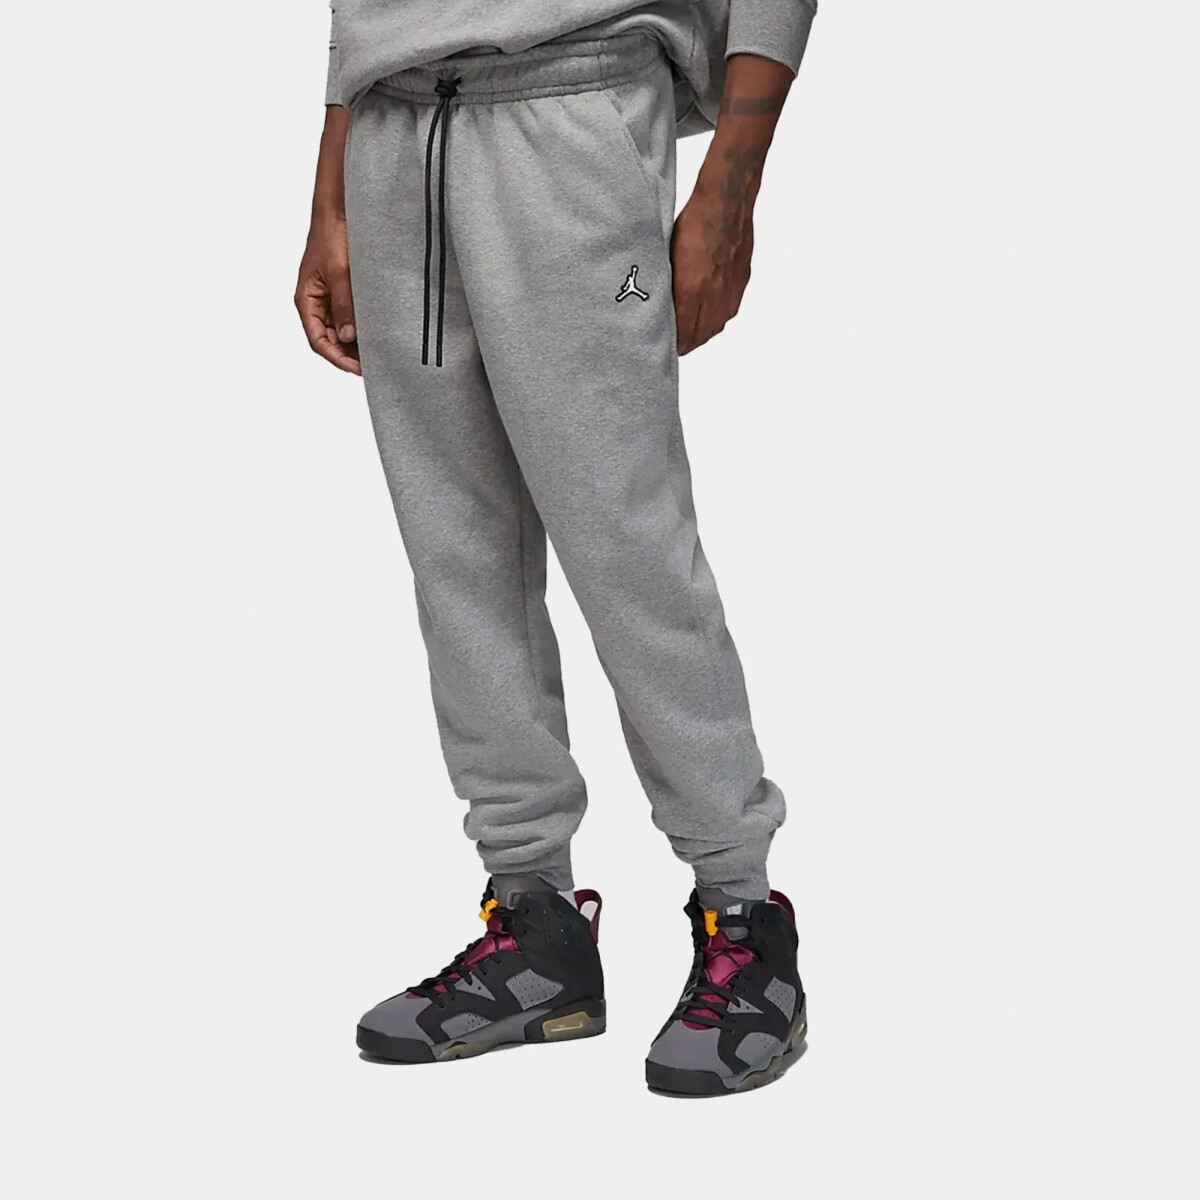 Pantalon Nike Jordan Moda Hombre J Ess Flc Carbon Heather Black/(white) - S/C 